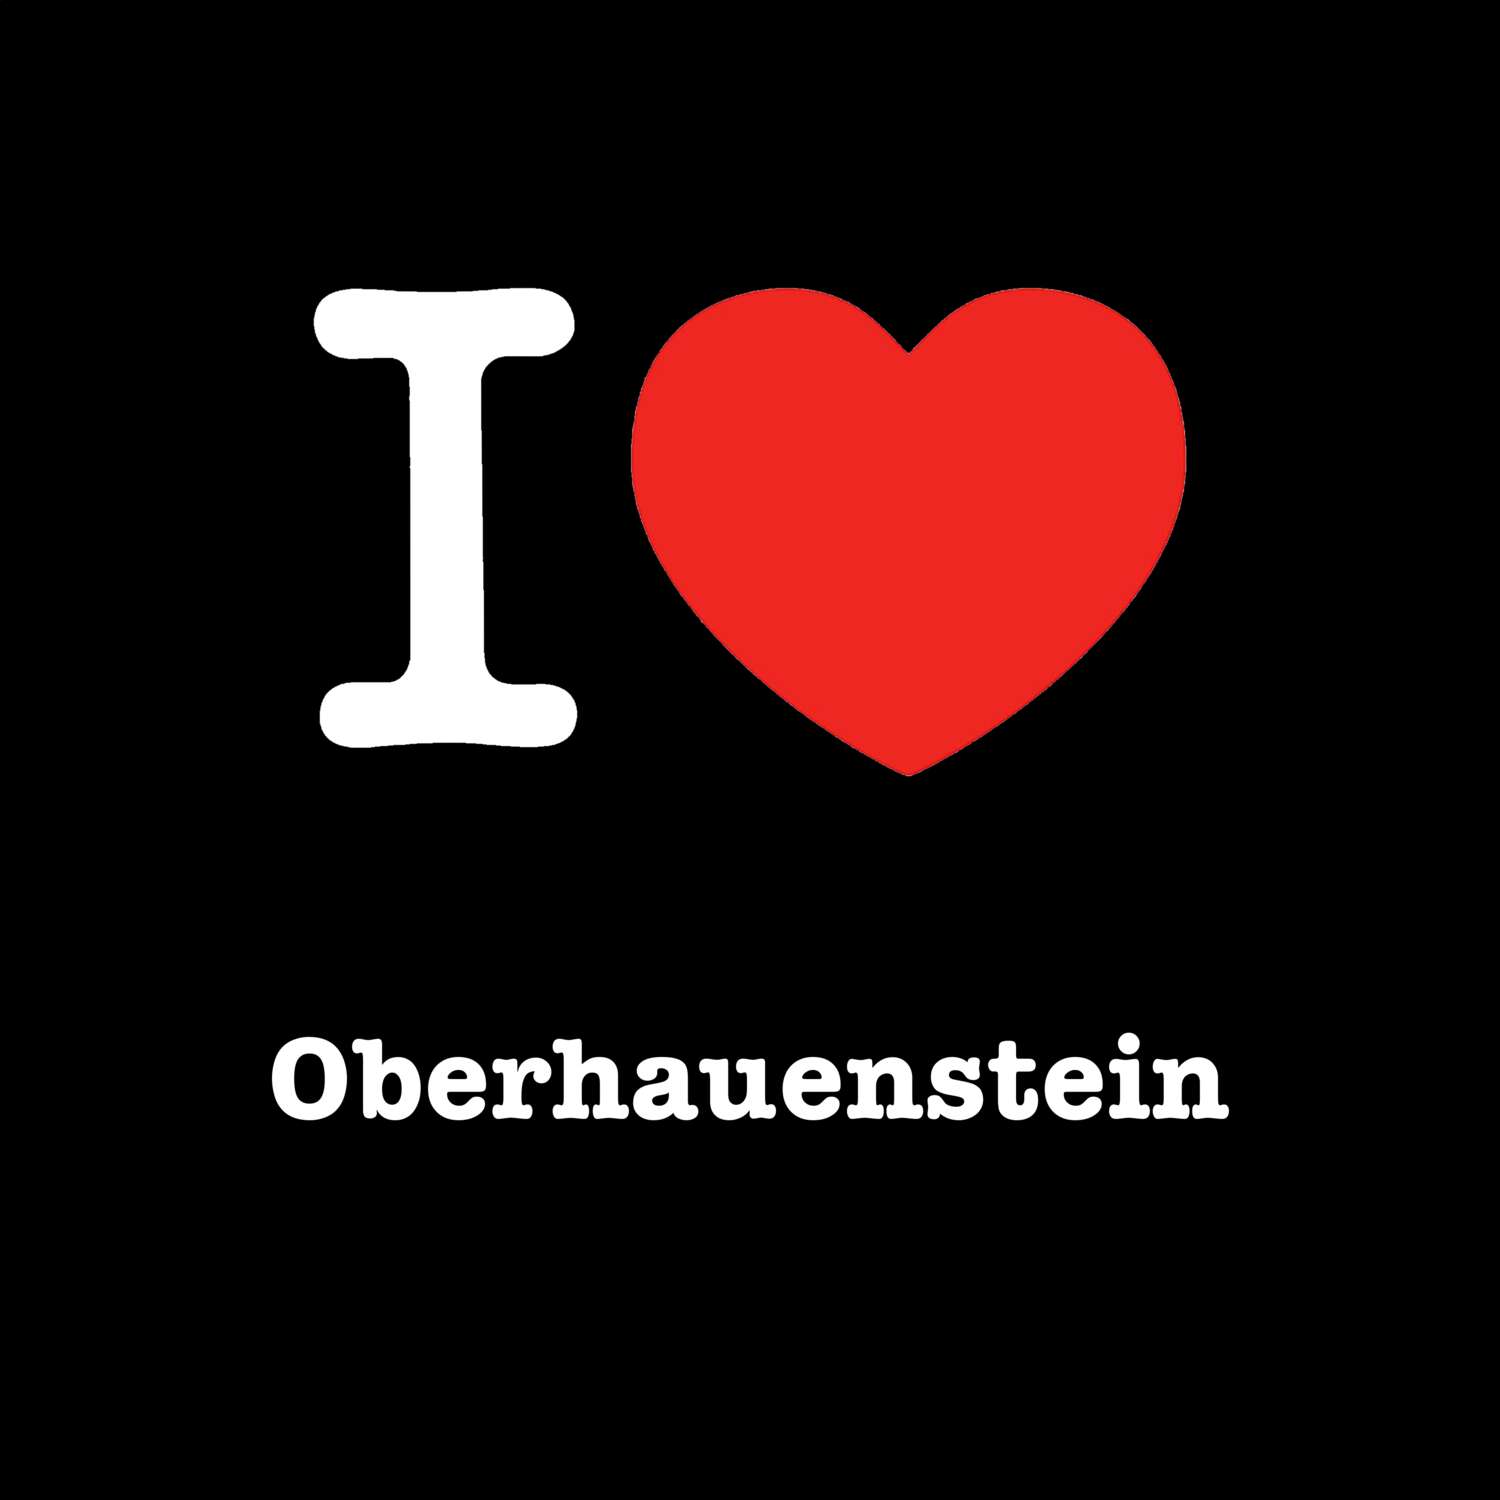 Oberhauenstein T-Shirt »I love«